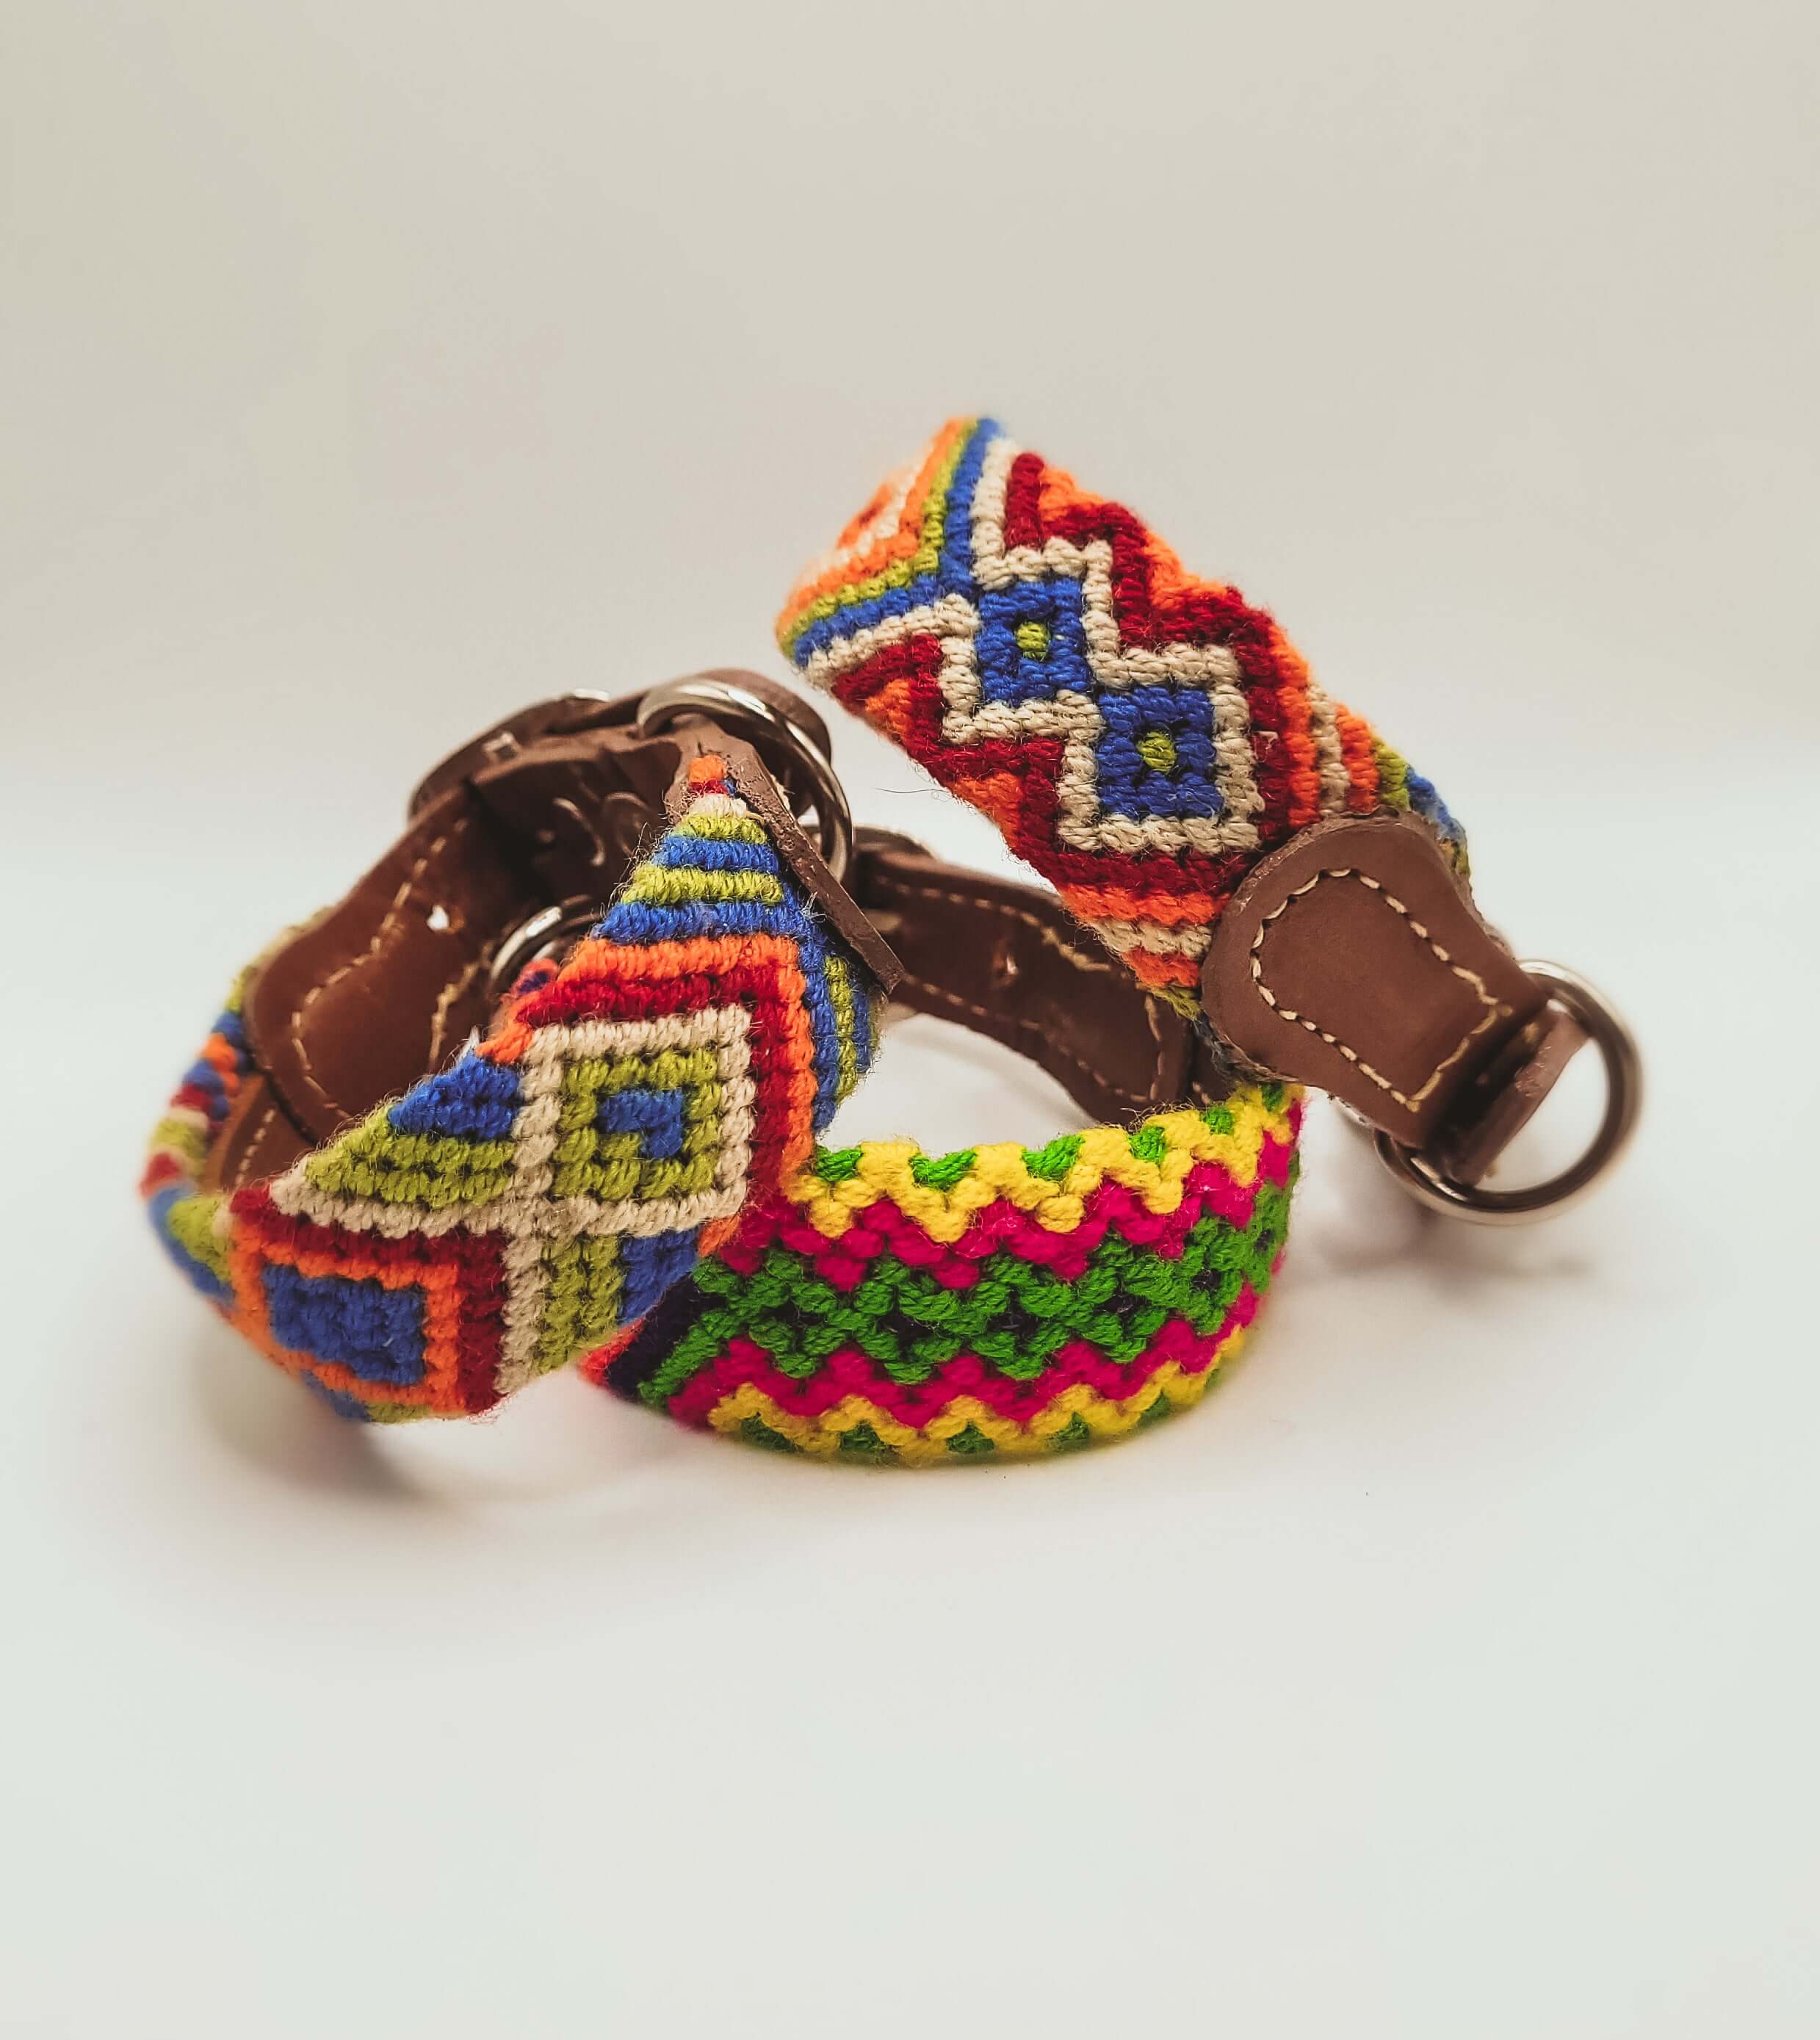 Small artisan handwoven dog collars